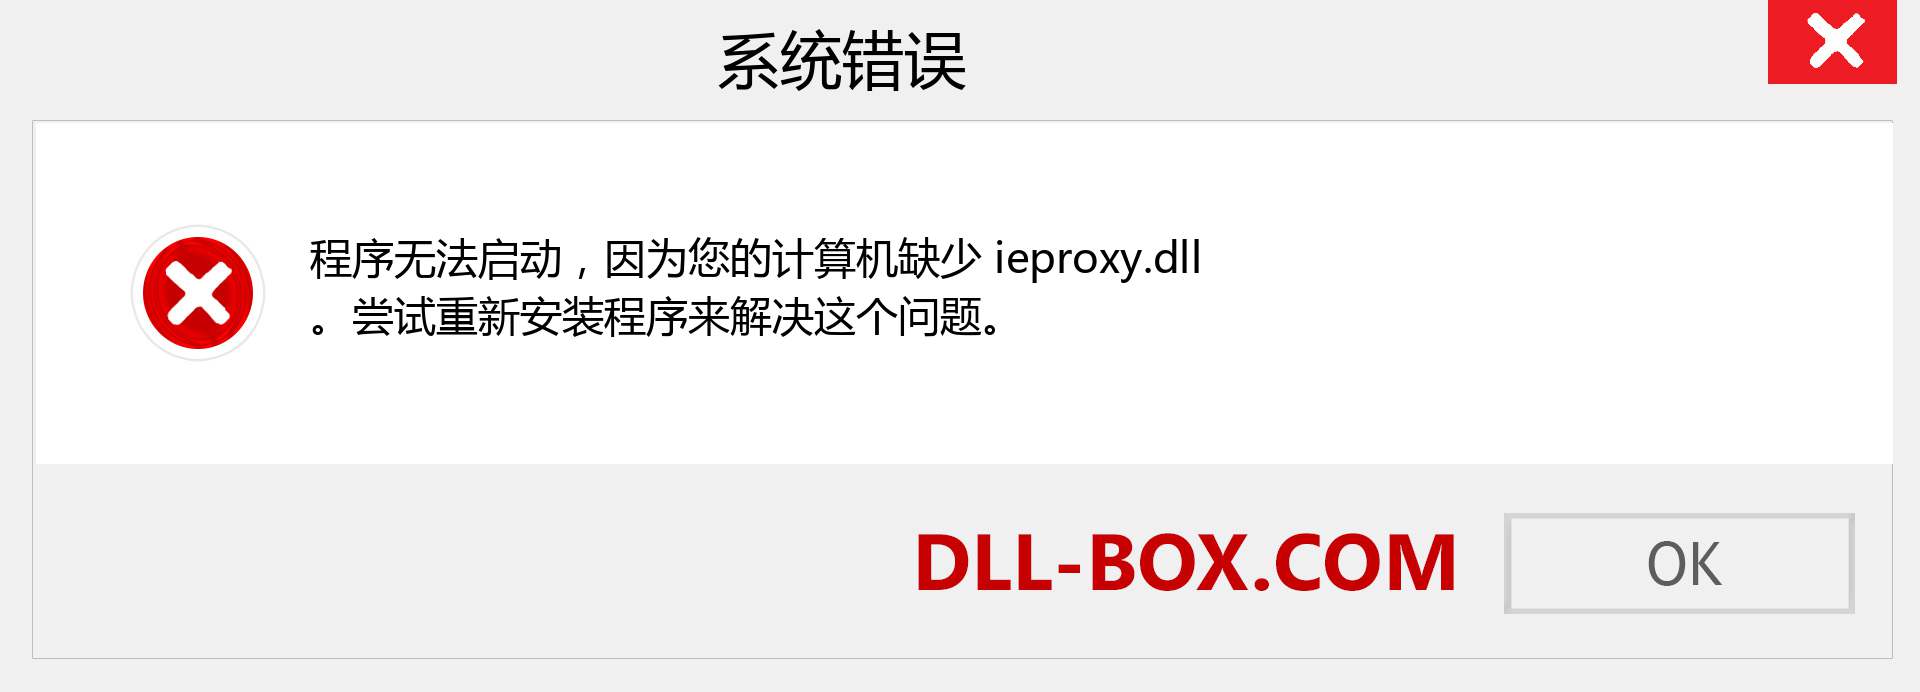 ieproxy.dll 文件丢失？。 适用于 Windows 7、8、10 的下载 - 修复 Windows、照片、图像上的 ieproxy dll 丢失错误